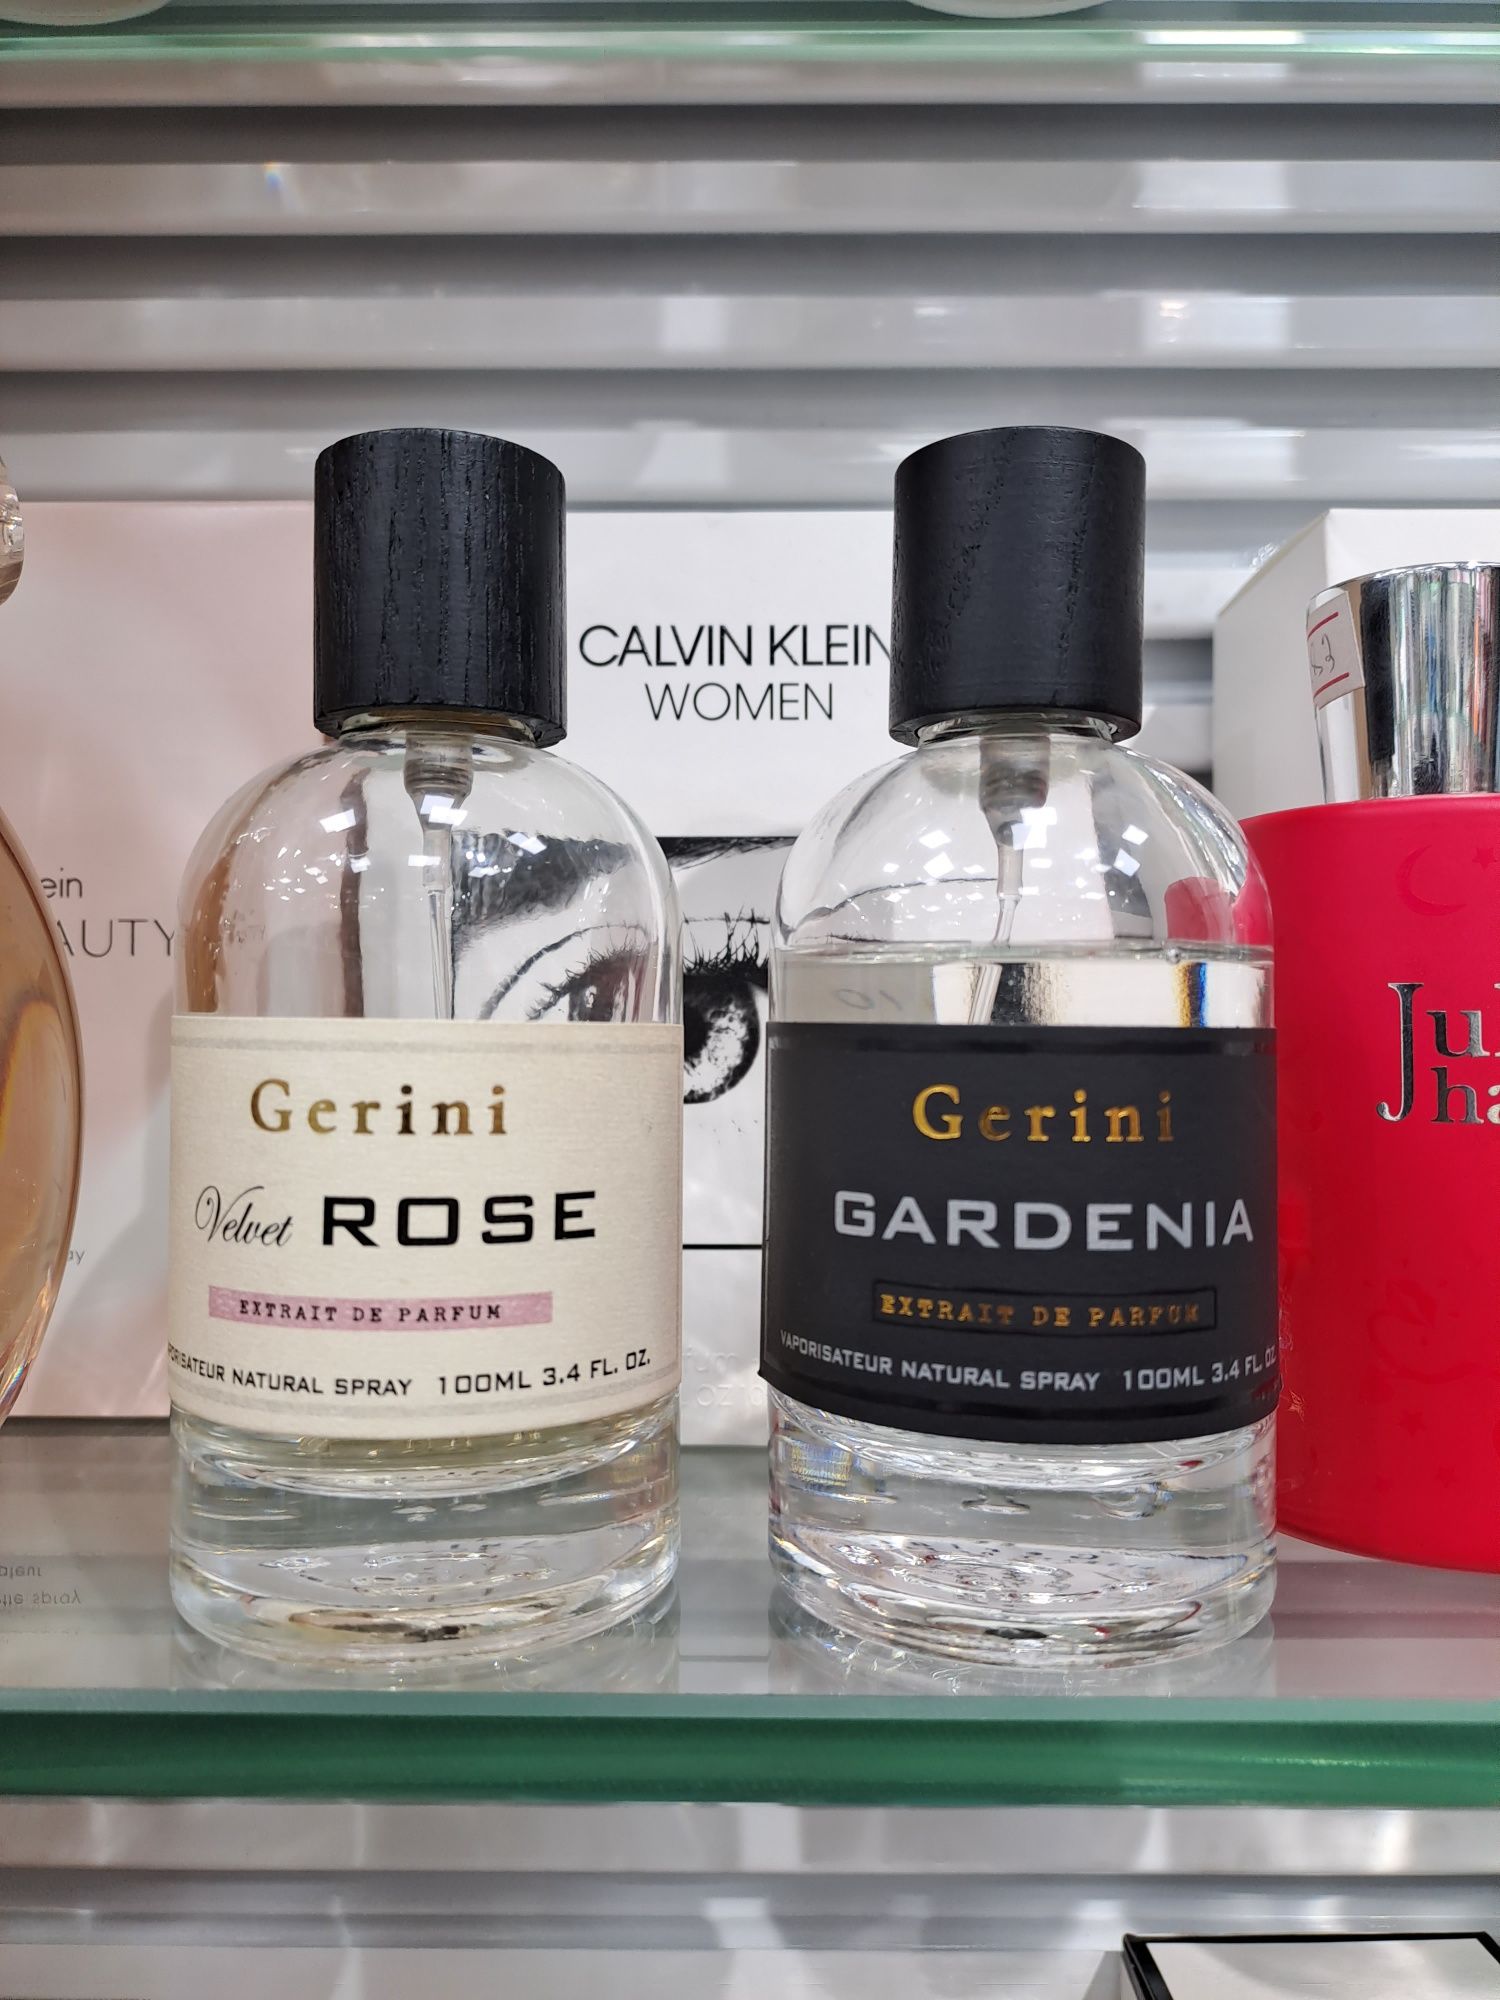 Gerini Gardenia Extrait de Parfum